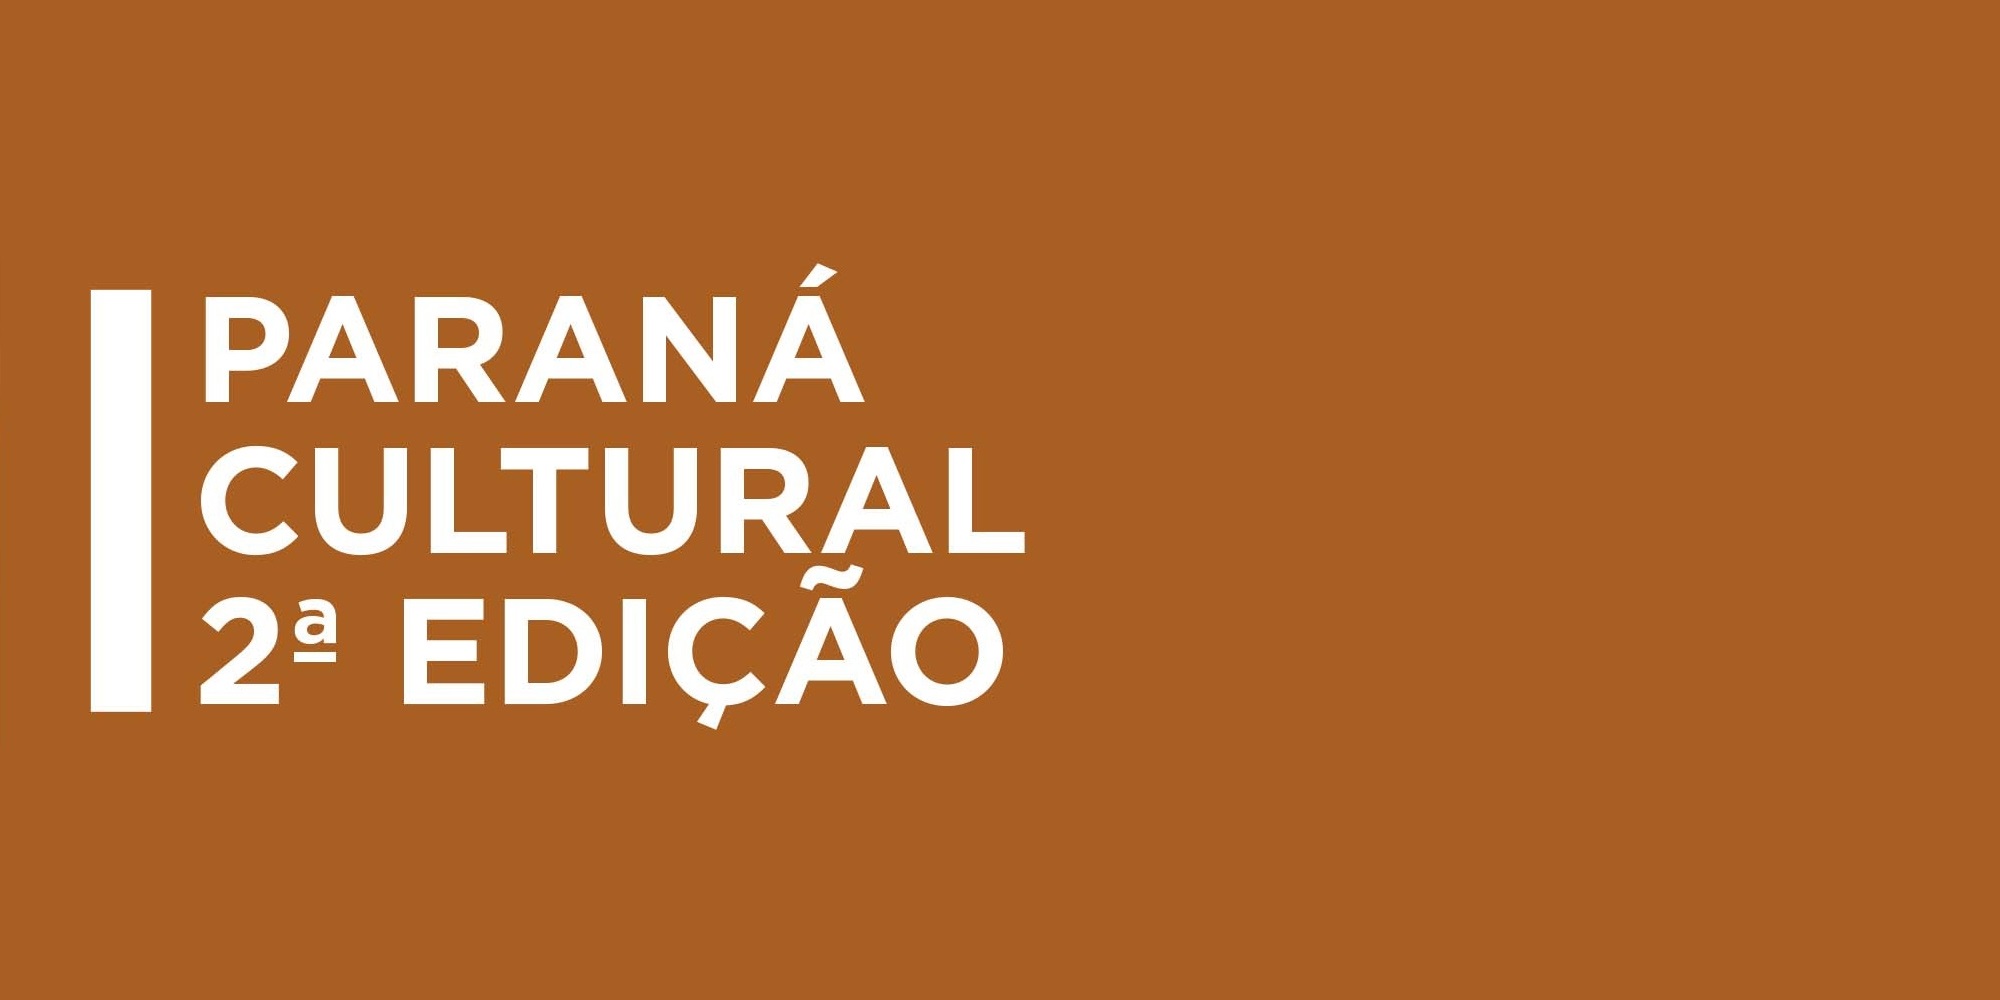 Paraná Cultural 2ª Edição